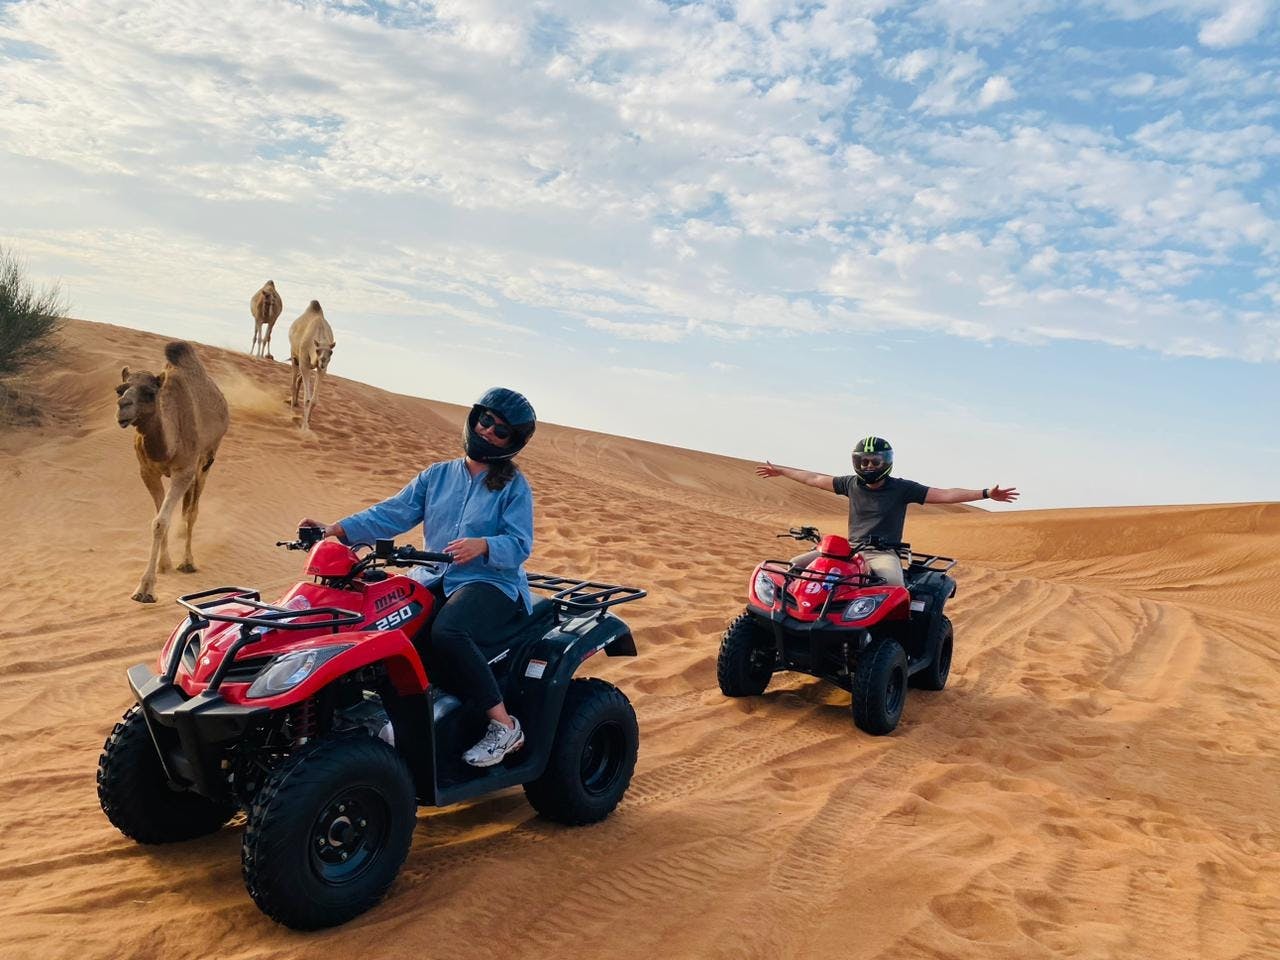 Passeio de quadriciclo duplo no deserto de Dubai com sandboard, passeio de camelo e churrasco